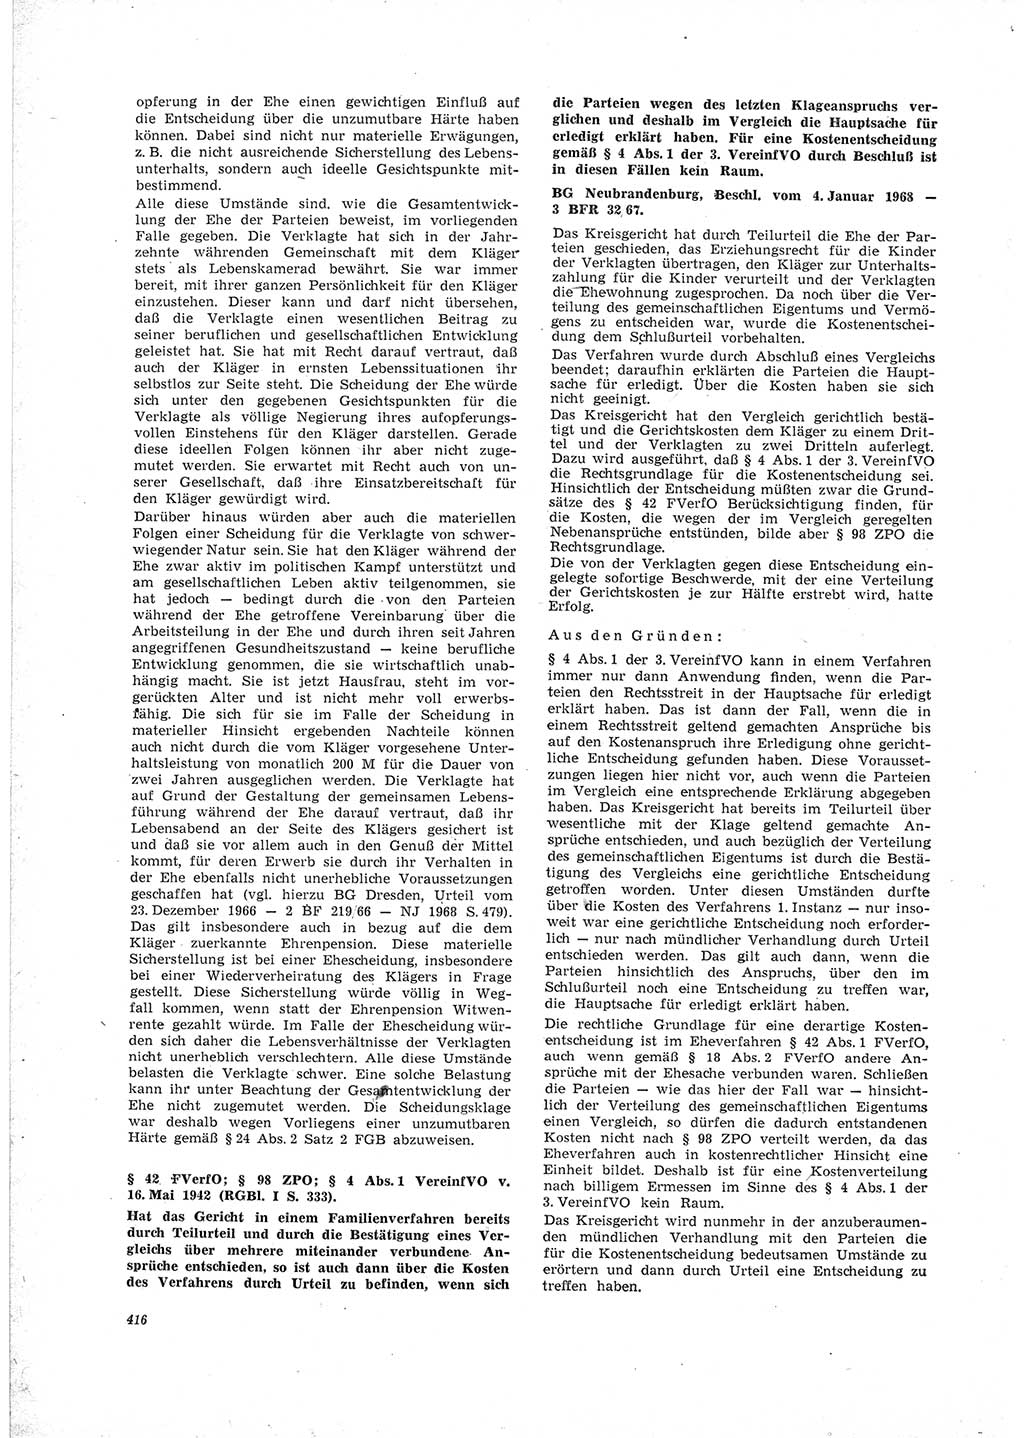 Neue Justiz (NJ), Zeitschrift für Recht und Rechtswissenschaft [Deutsche Demokratische Republik (DDR)], 23. Jahrgang 1969, Seite 416 (NJ DDR 1969, S. 416)